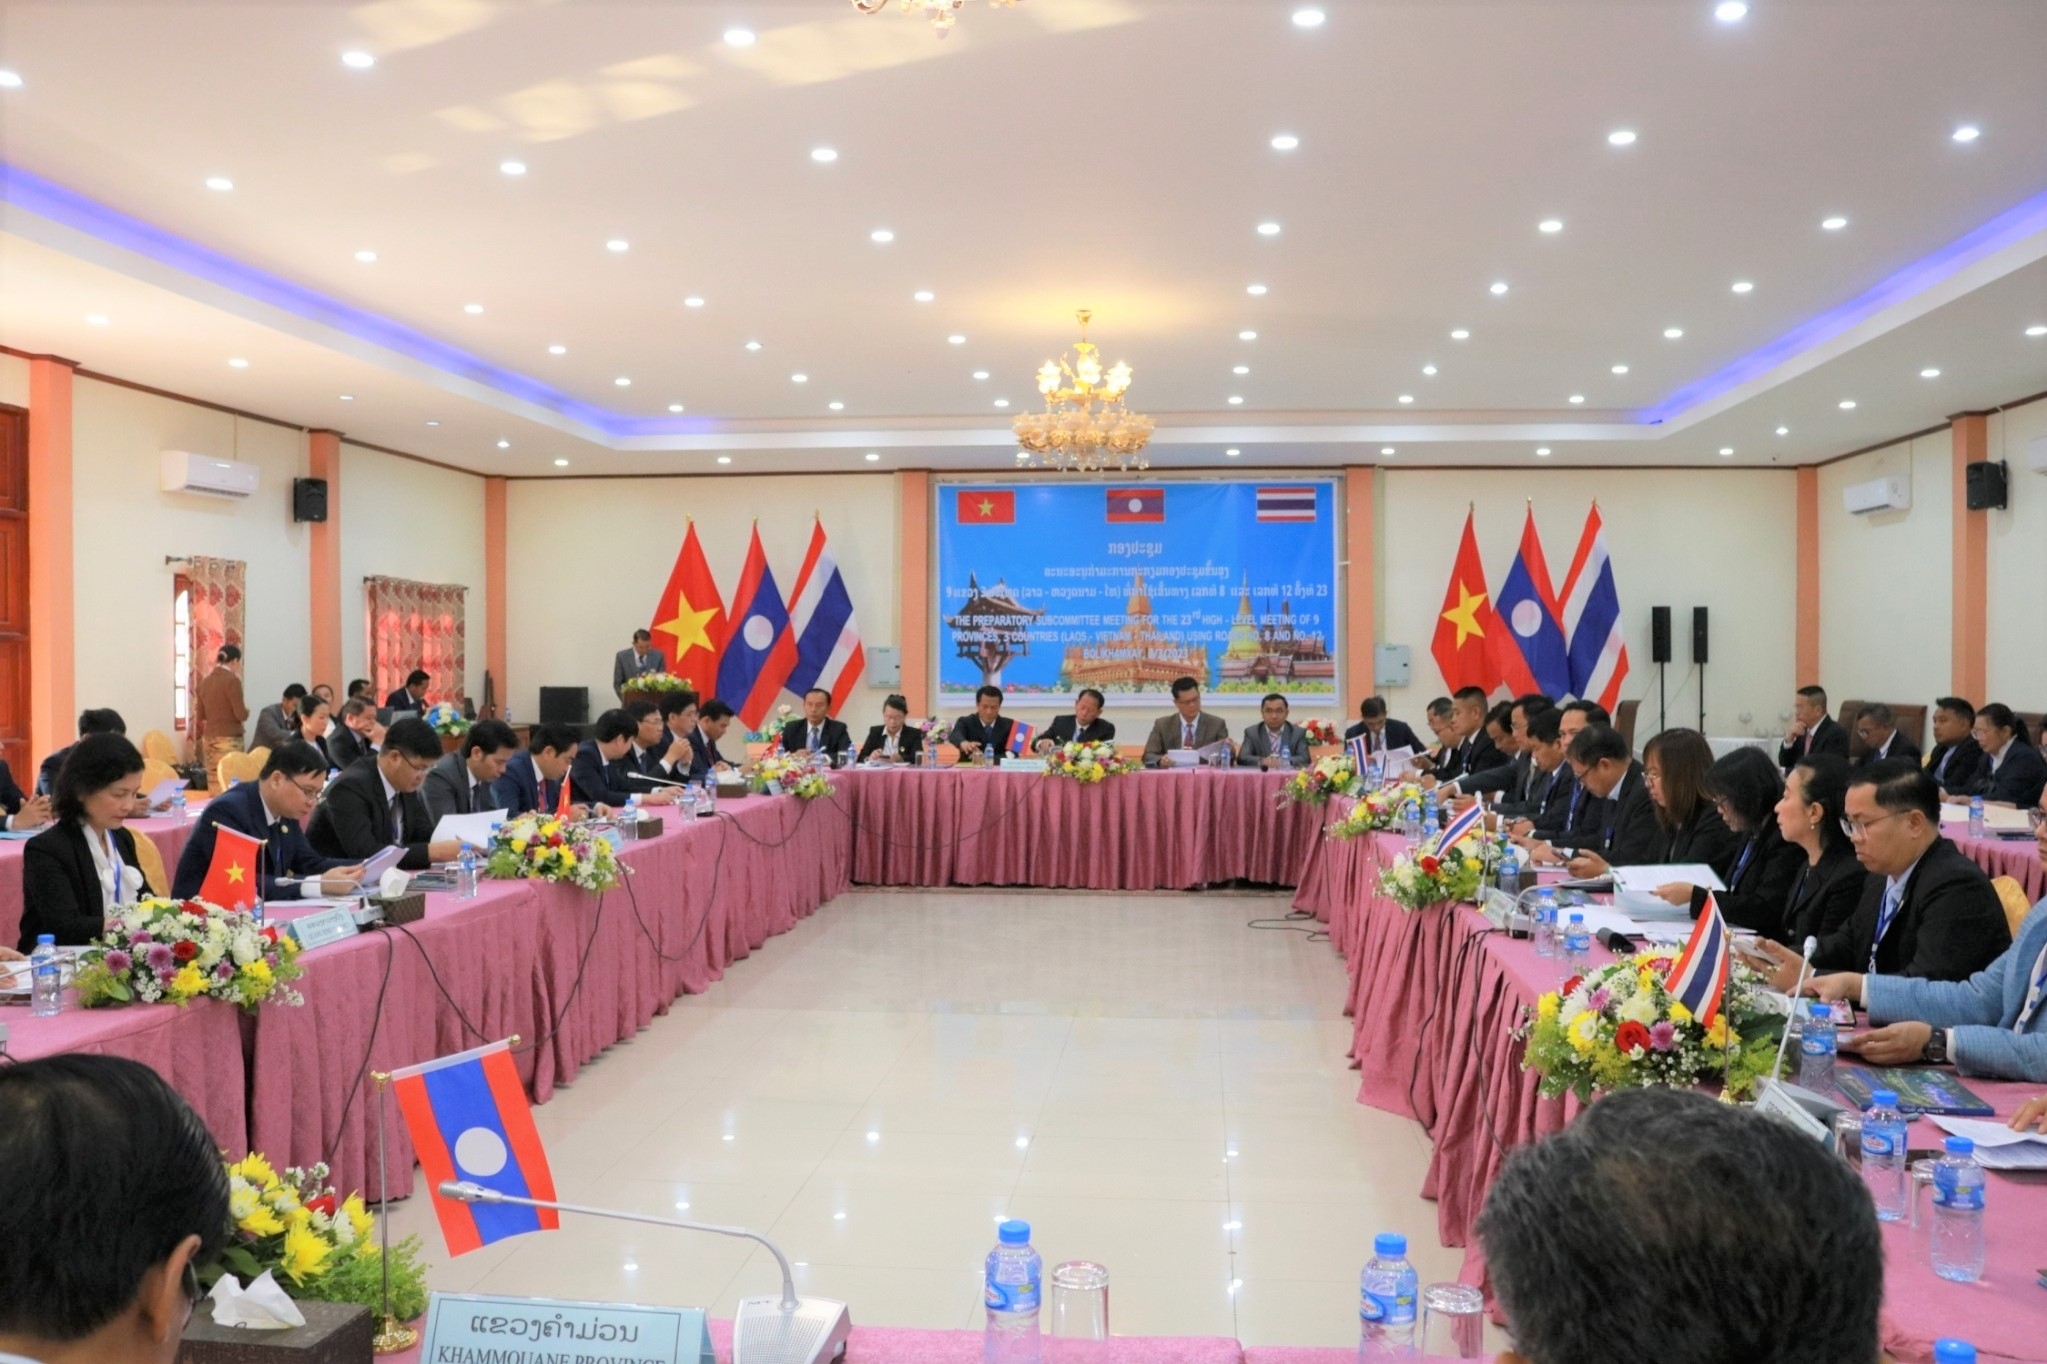 ม.นครพนม ร่วมประชุมคณะอนุกรรมการเพื่อเตรียมการประชุมผู้บริหารระดับสูง 3 ประเทศ 9 จังหวัด (ไทย - ลาว - เวียดนาม)